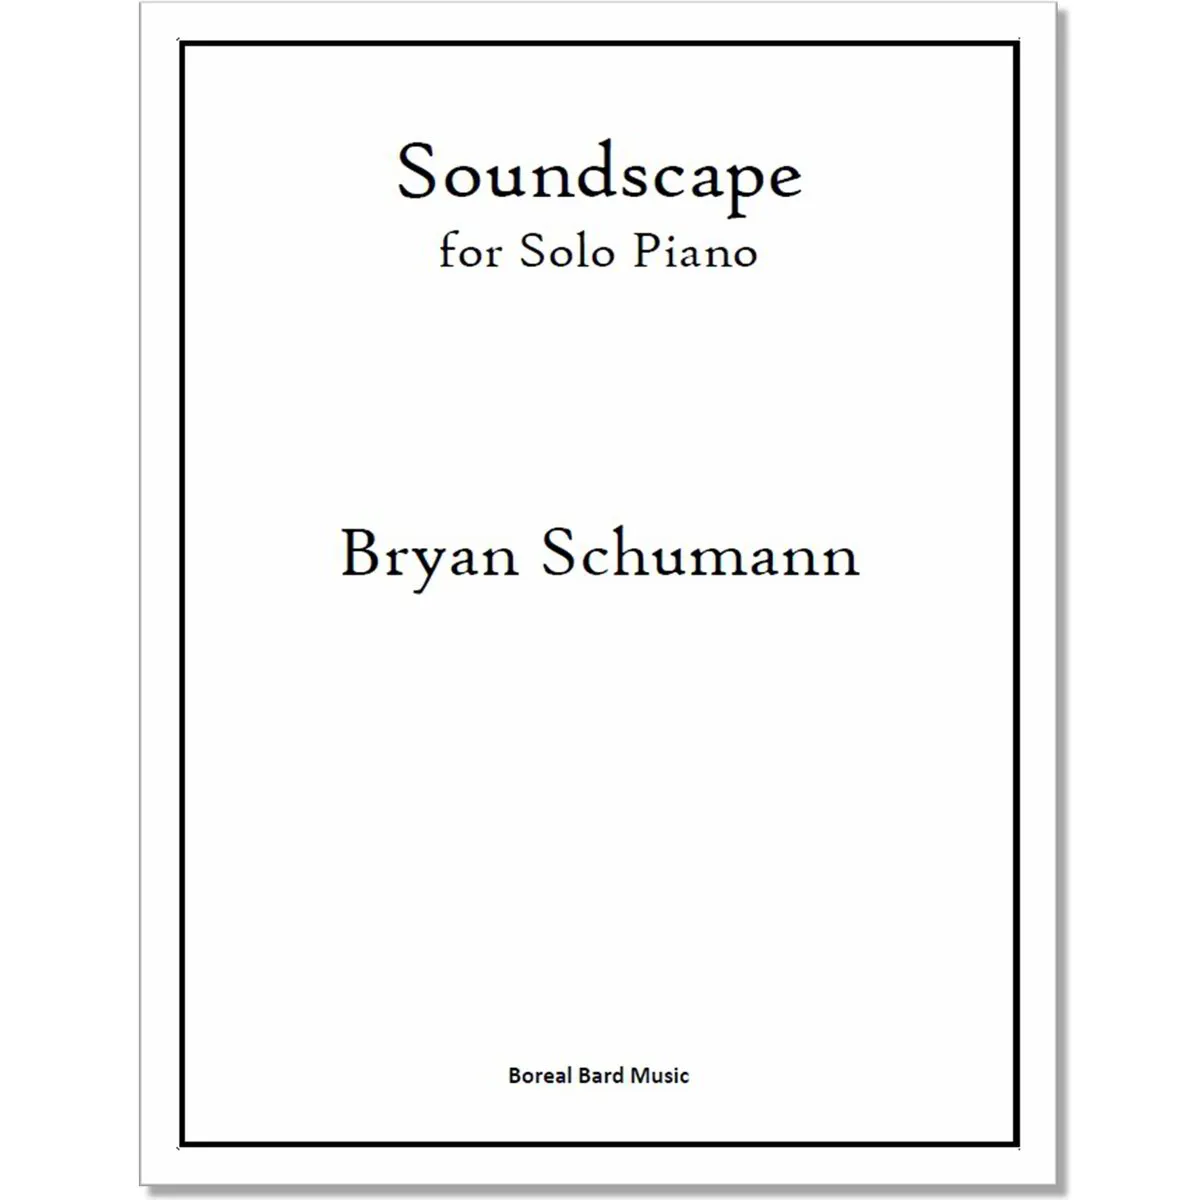 Soundscape for Solo Piano (sheet music)